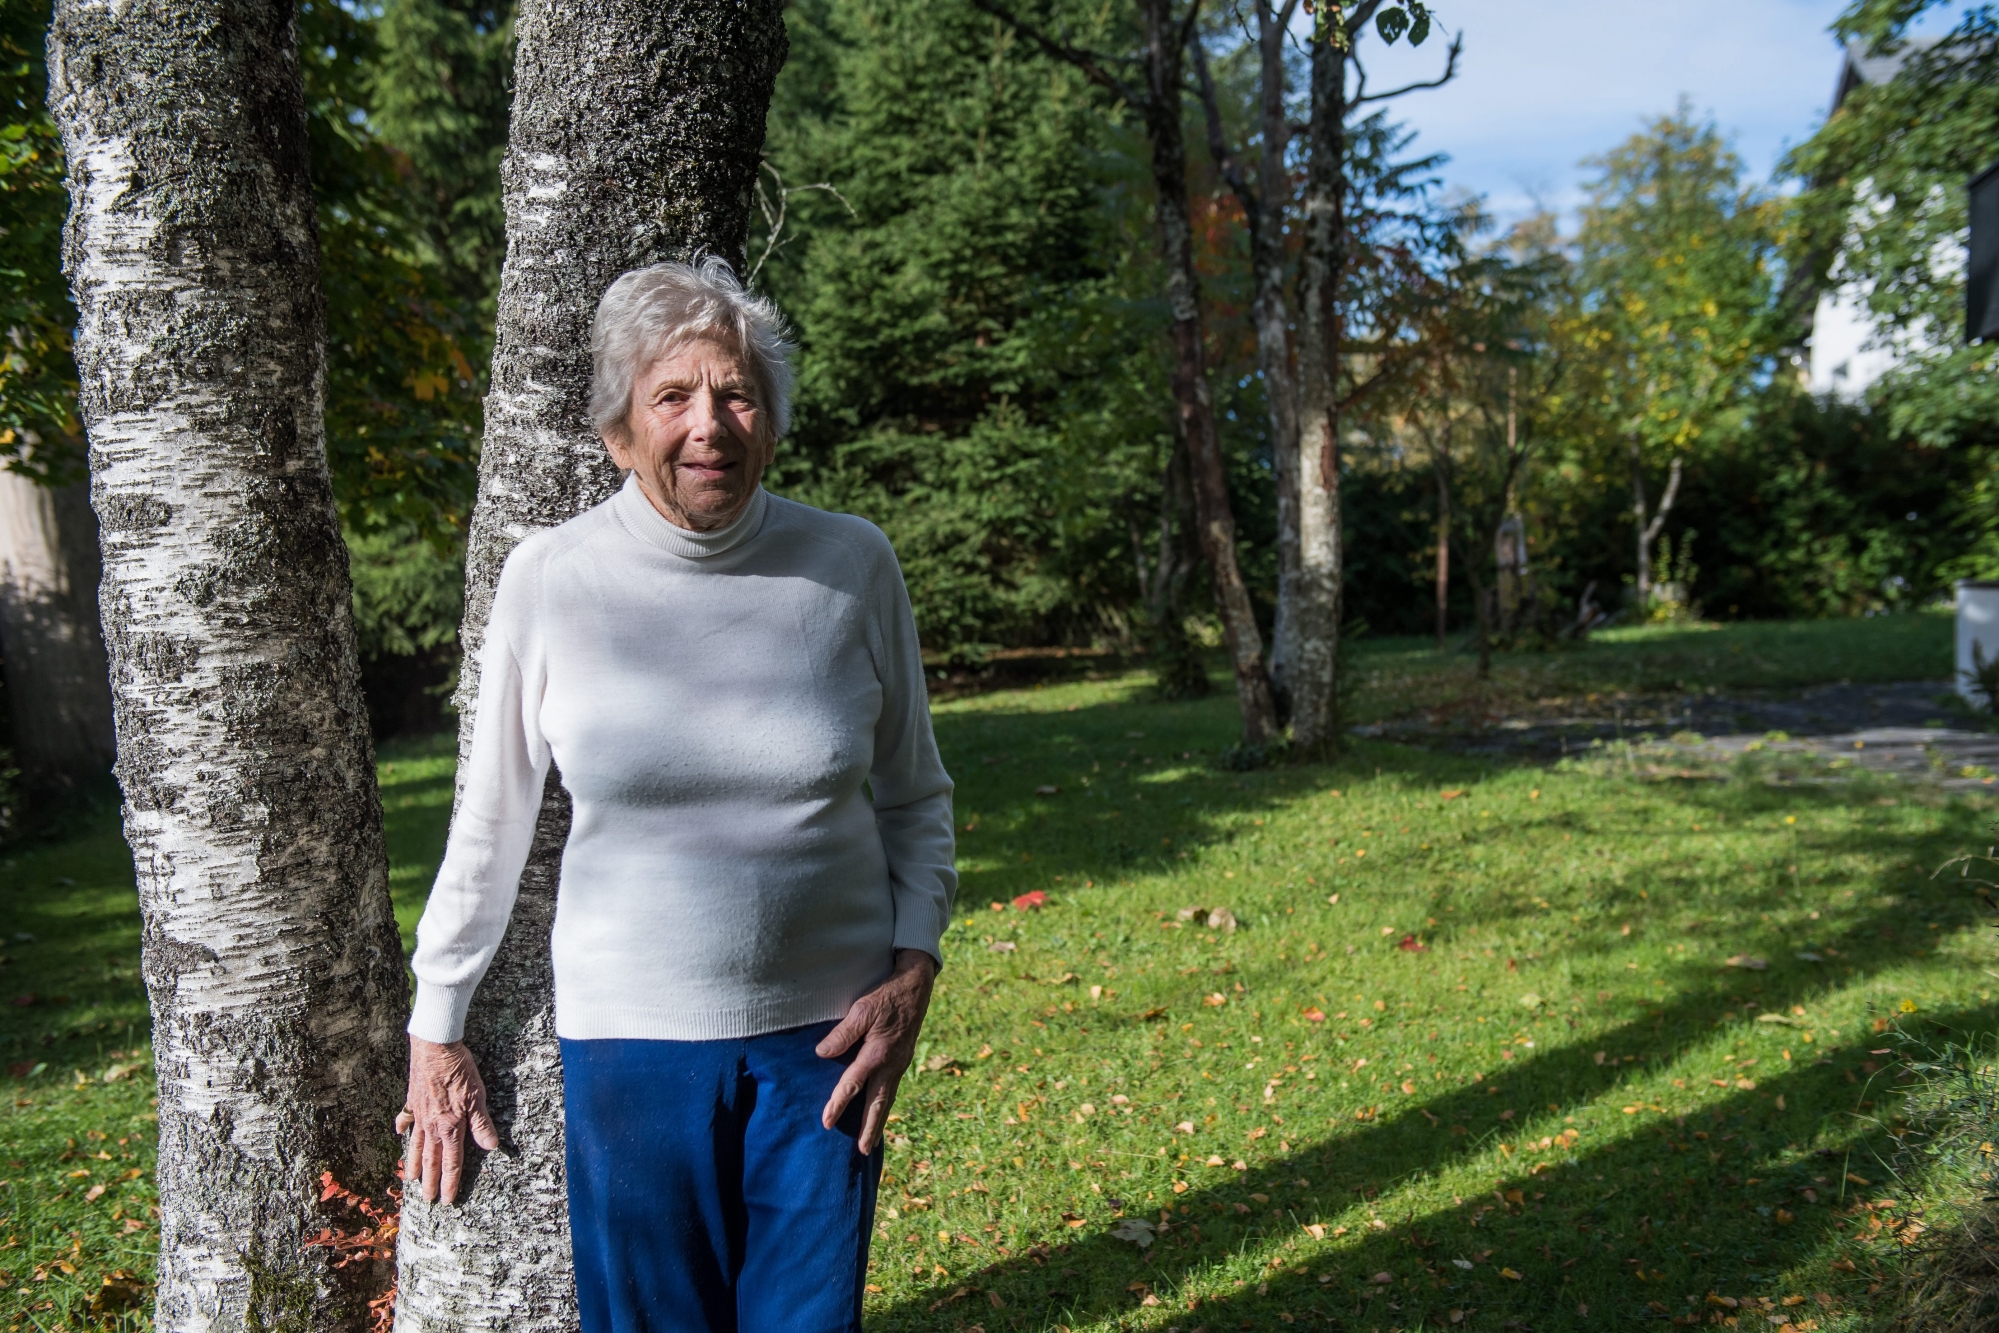 Respirer, s'étirer, se relaxer... Les secrets de longévité de Monique Moschard, prof de yoga de 92 ans.